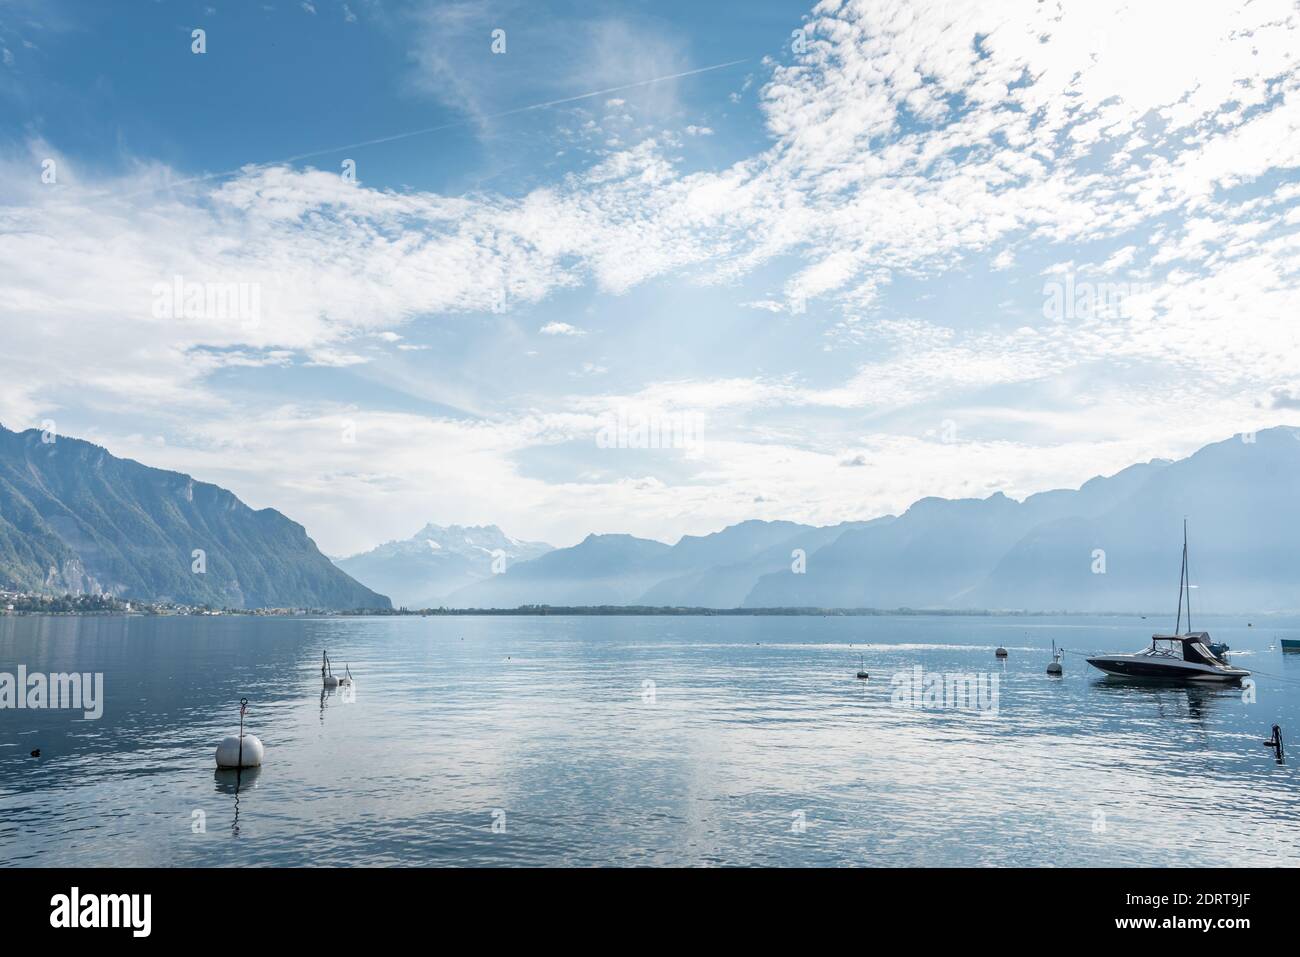 Lac alpin avec eau calme et bateau amarré et entouré de sommets enneigés Banque D'Images